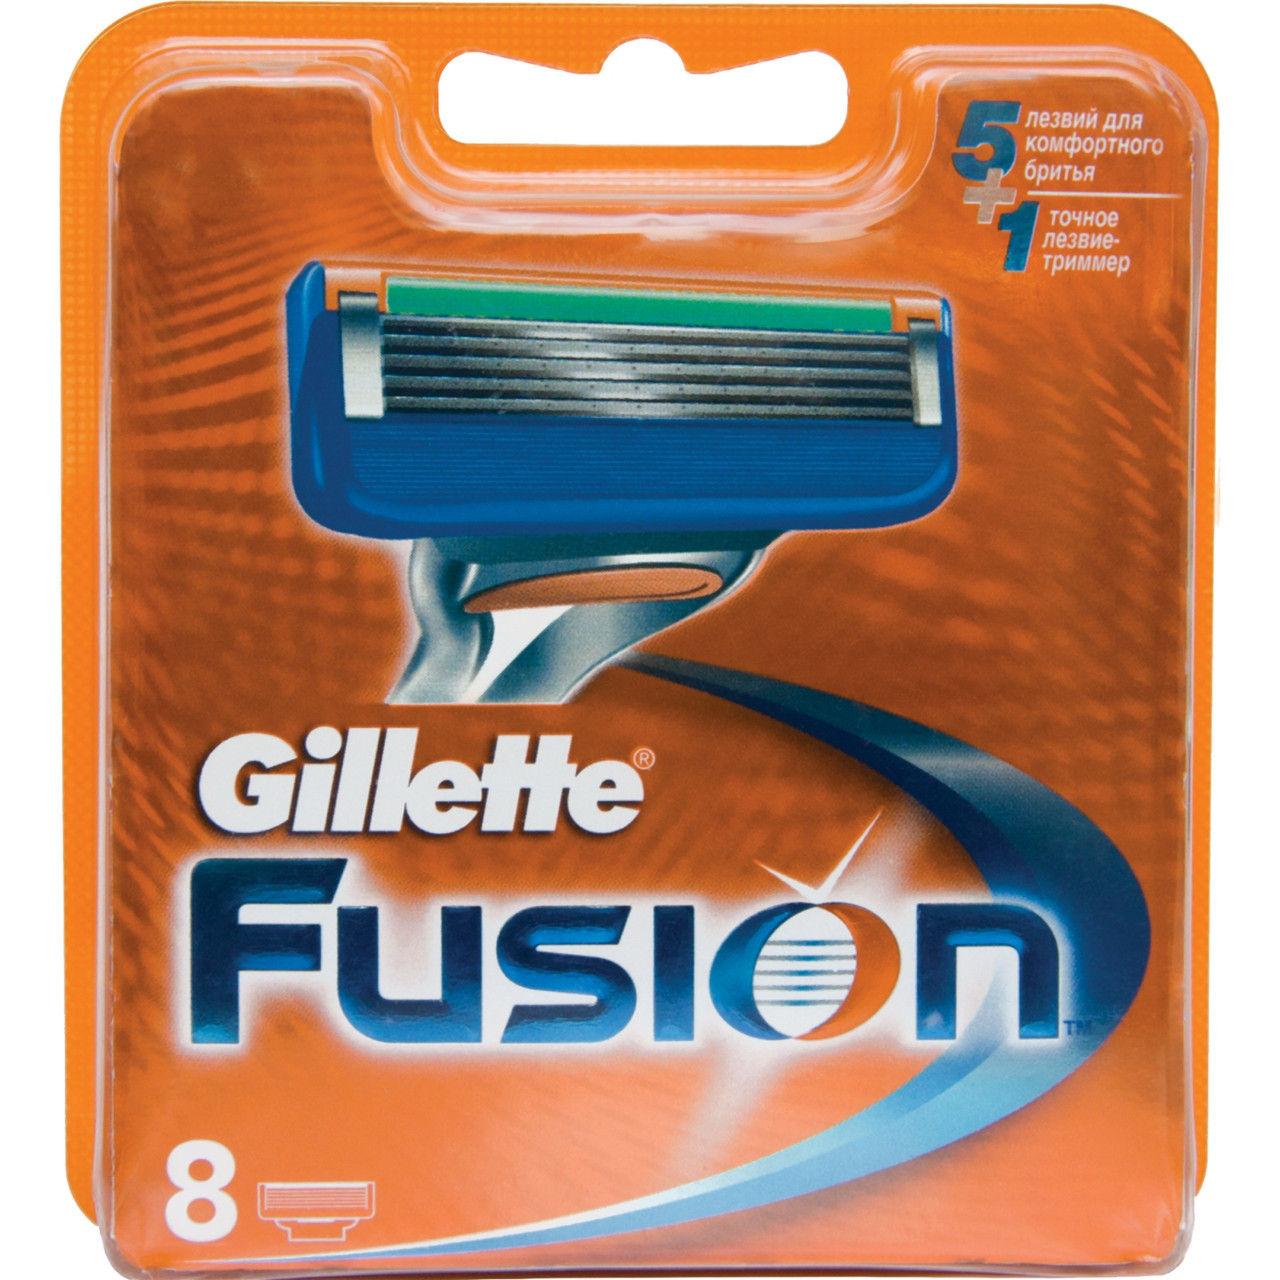 Gilette Fusion 8 шт. в упаковці, Німеччина, змінні касети для гоління